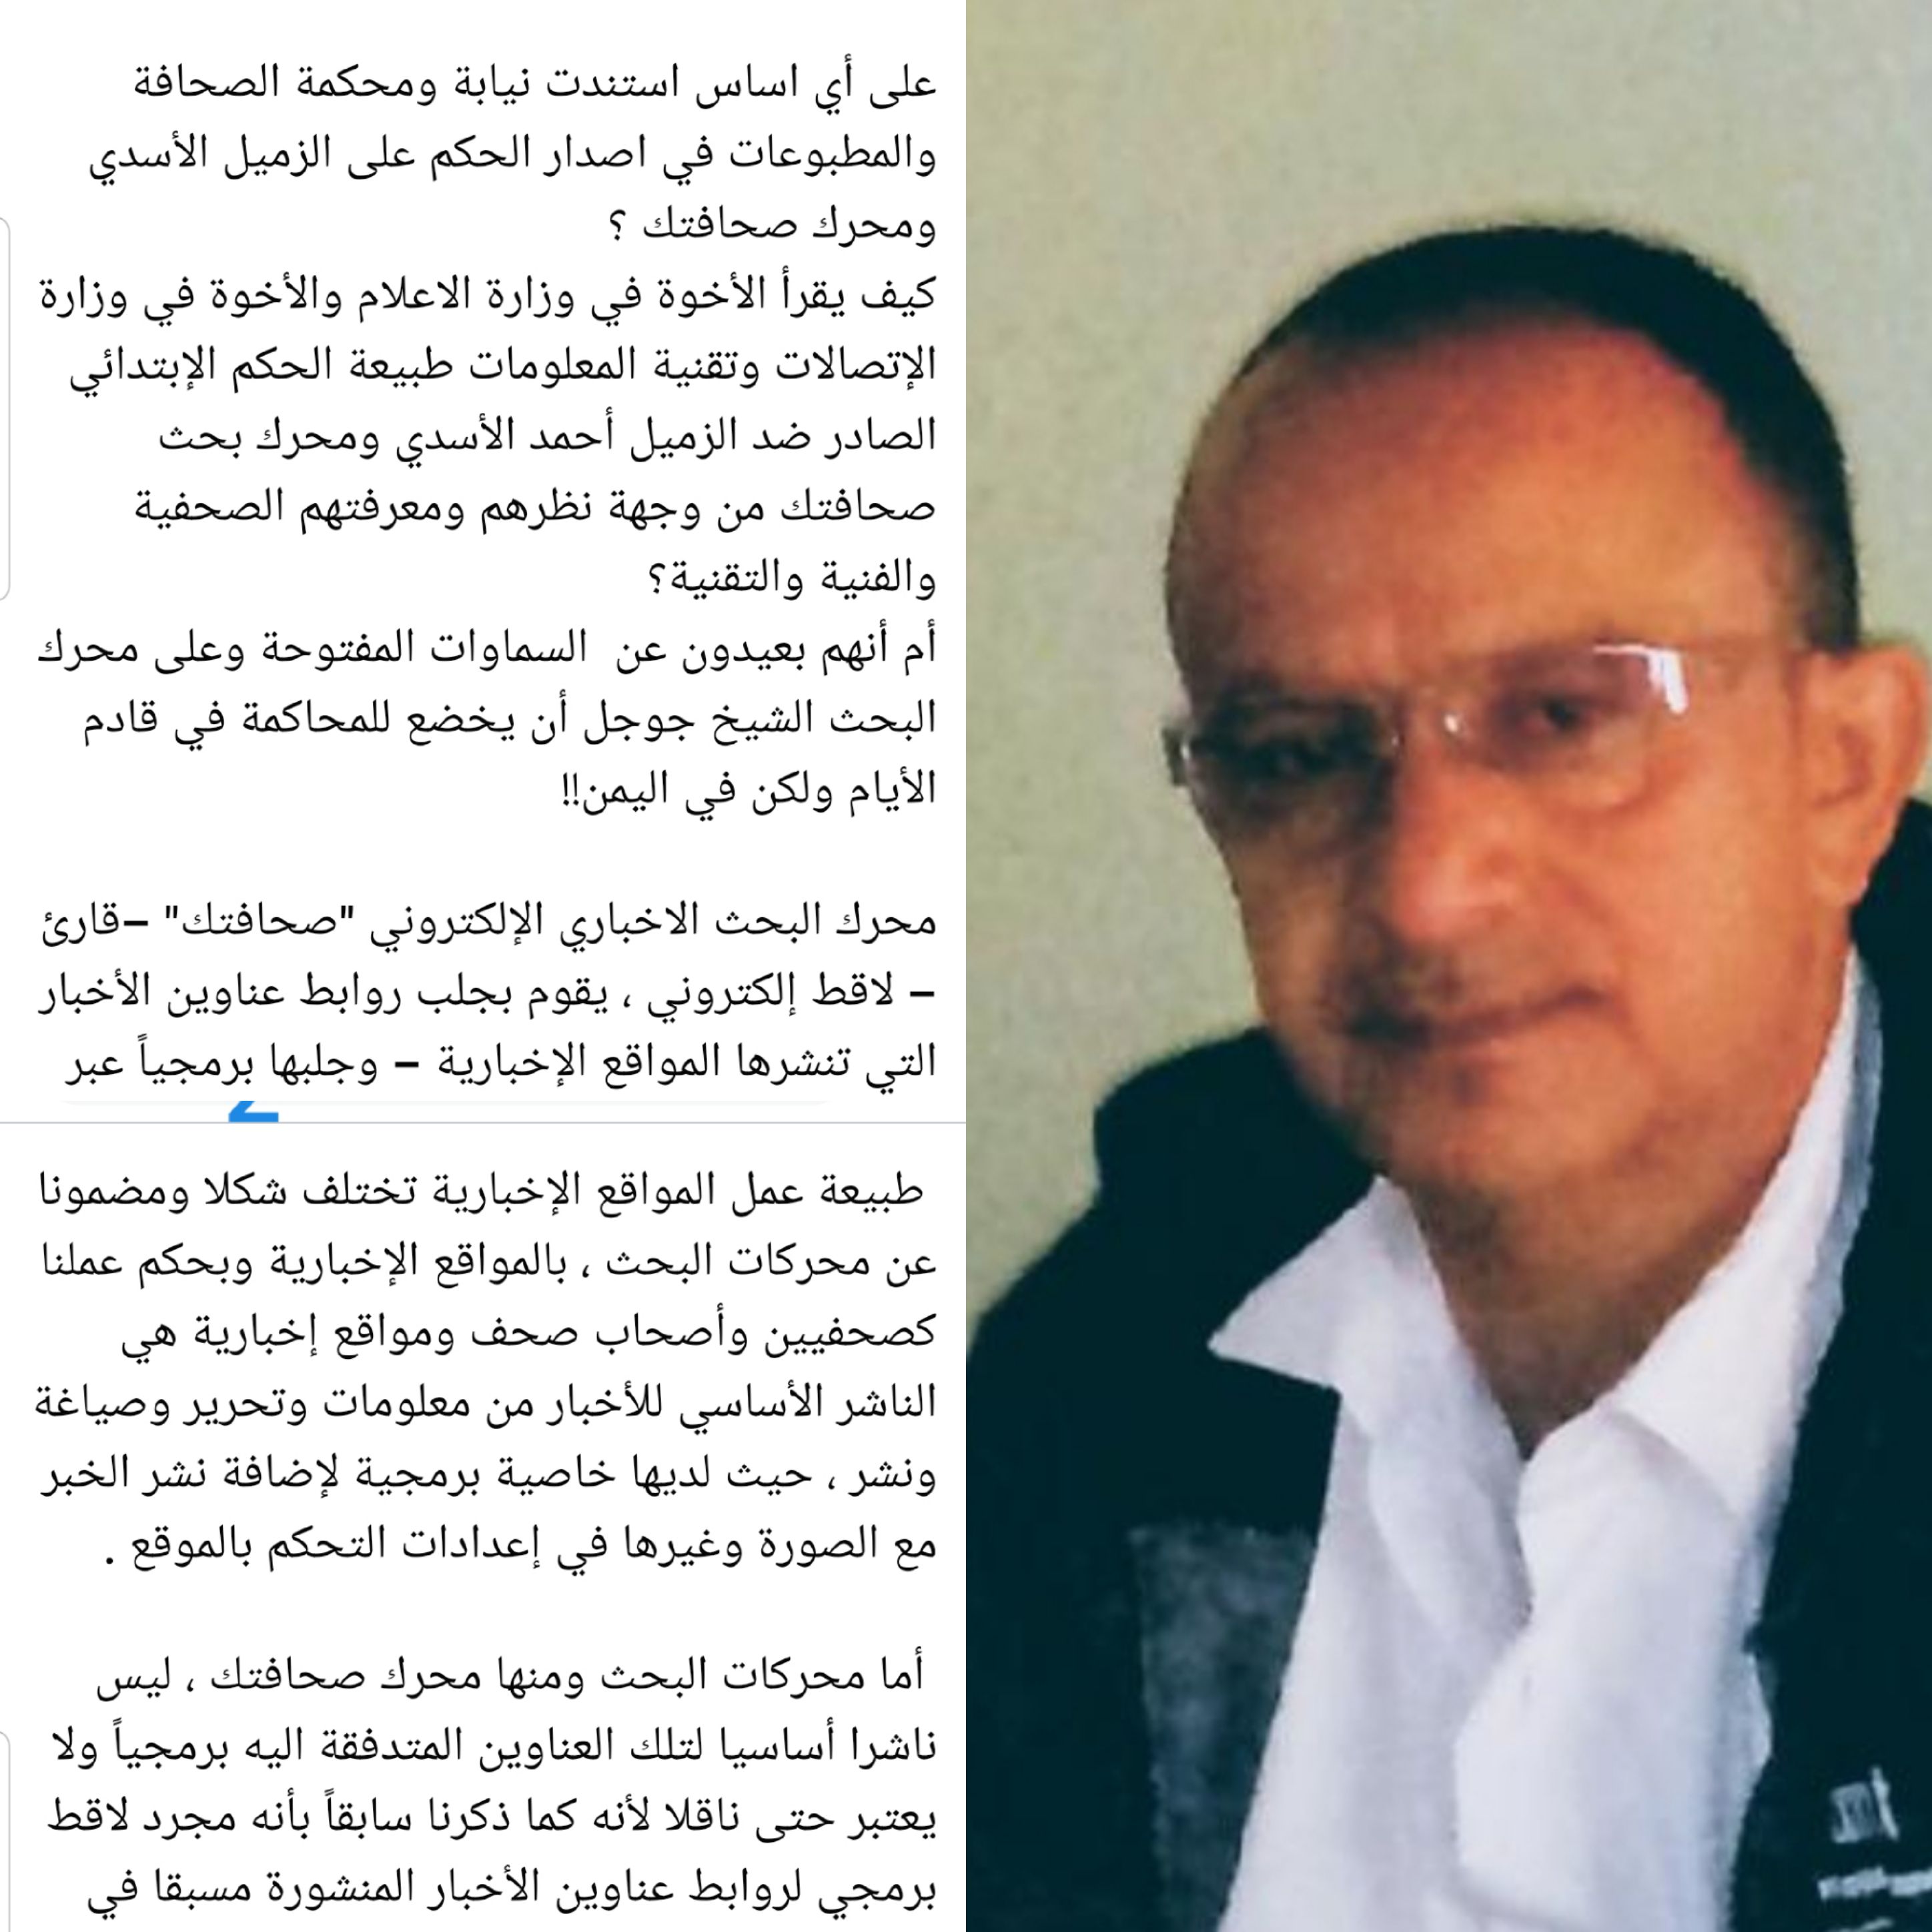 الصحفي والإعلامي اليمني عبده العبدلي رئيس تحرير صحيفة الراية يؤكد محرك صحافتك يختلف شكلا مضمونا عن المواقع الأخبارية